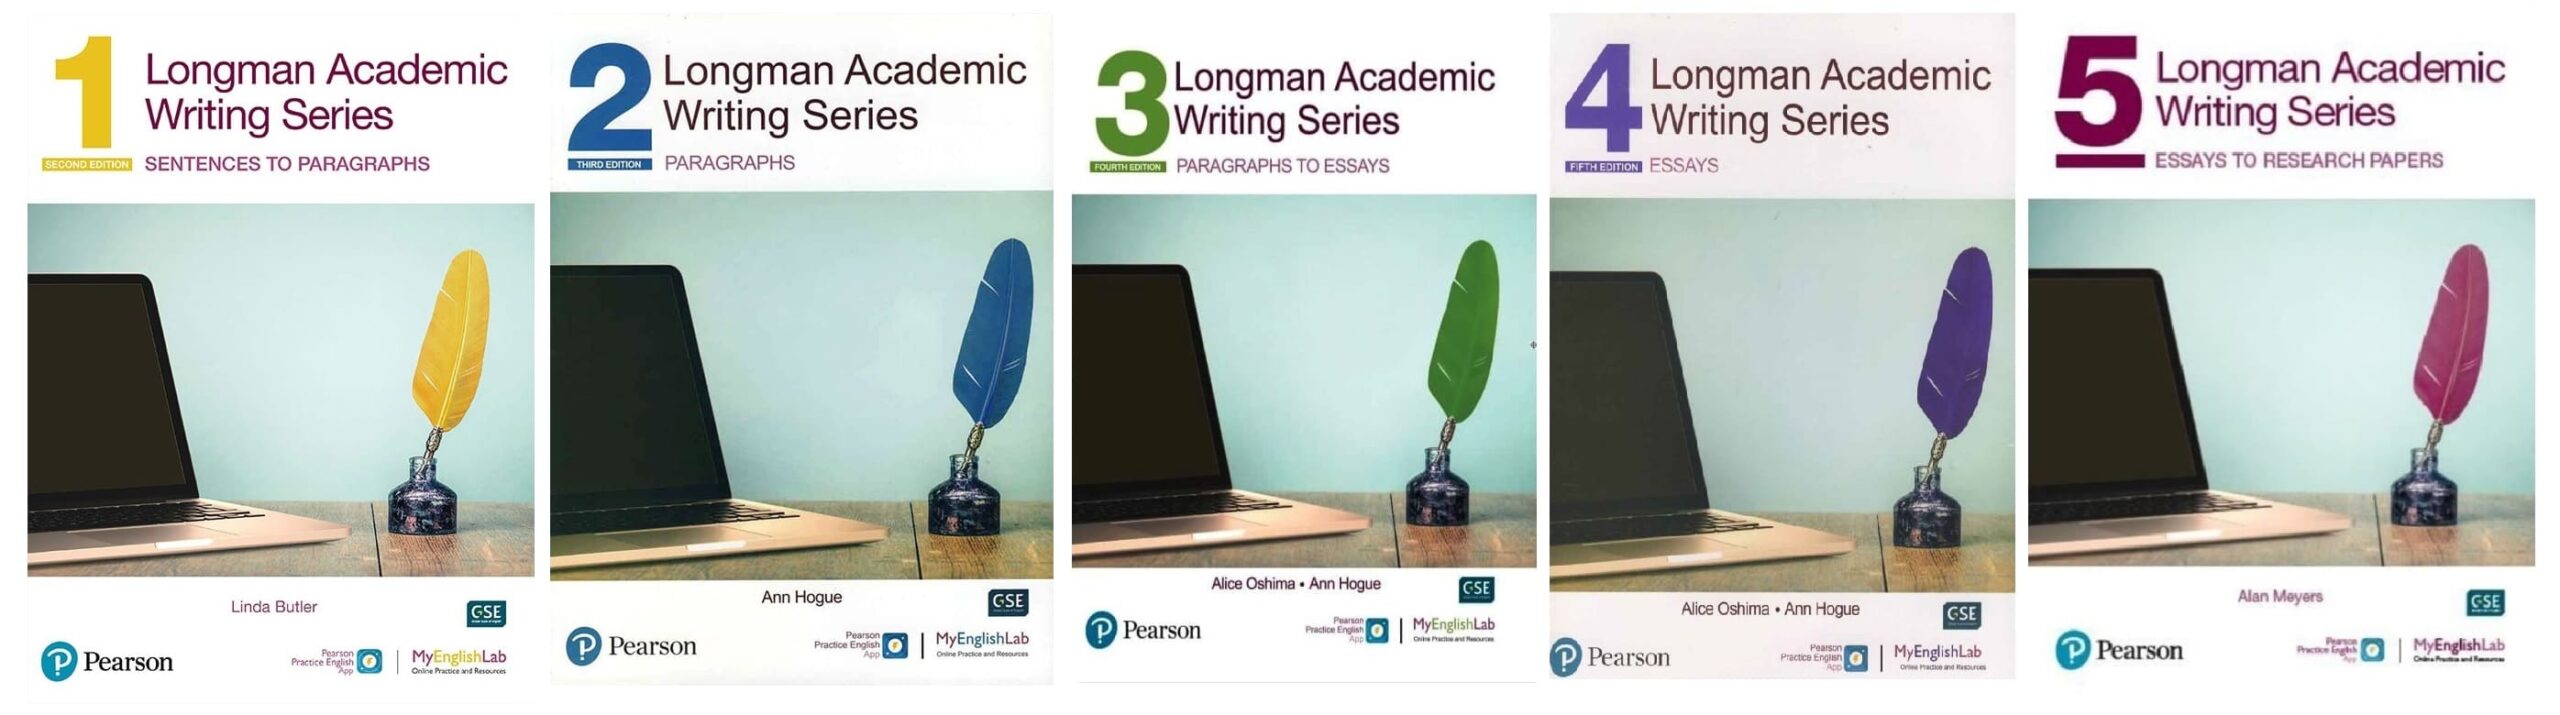 خرید کتاب زبان | فروشگاه اینترنتی کتاب زبان | Longman Academic Writing Second Edition | لانگمن آکادمیک رایتینگ ویرایش دوم